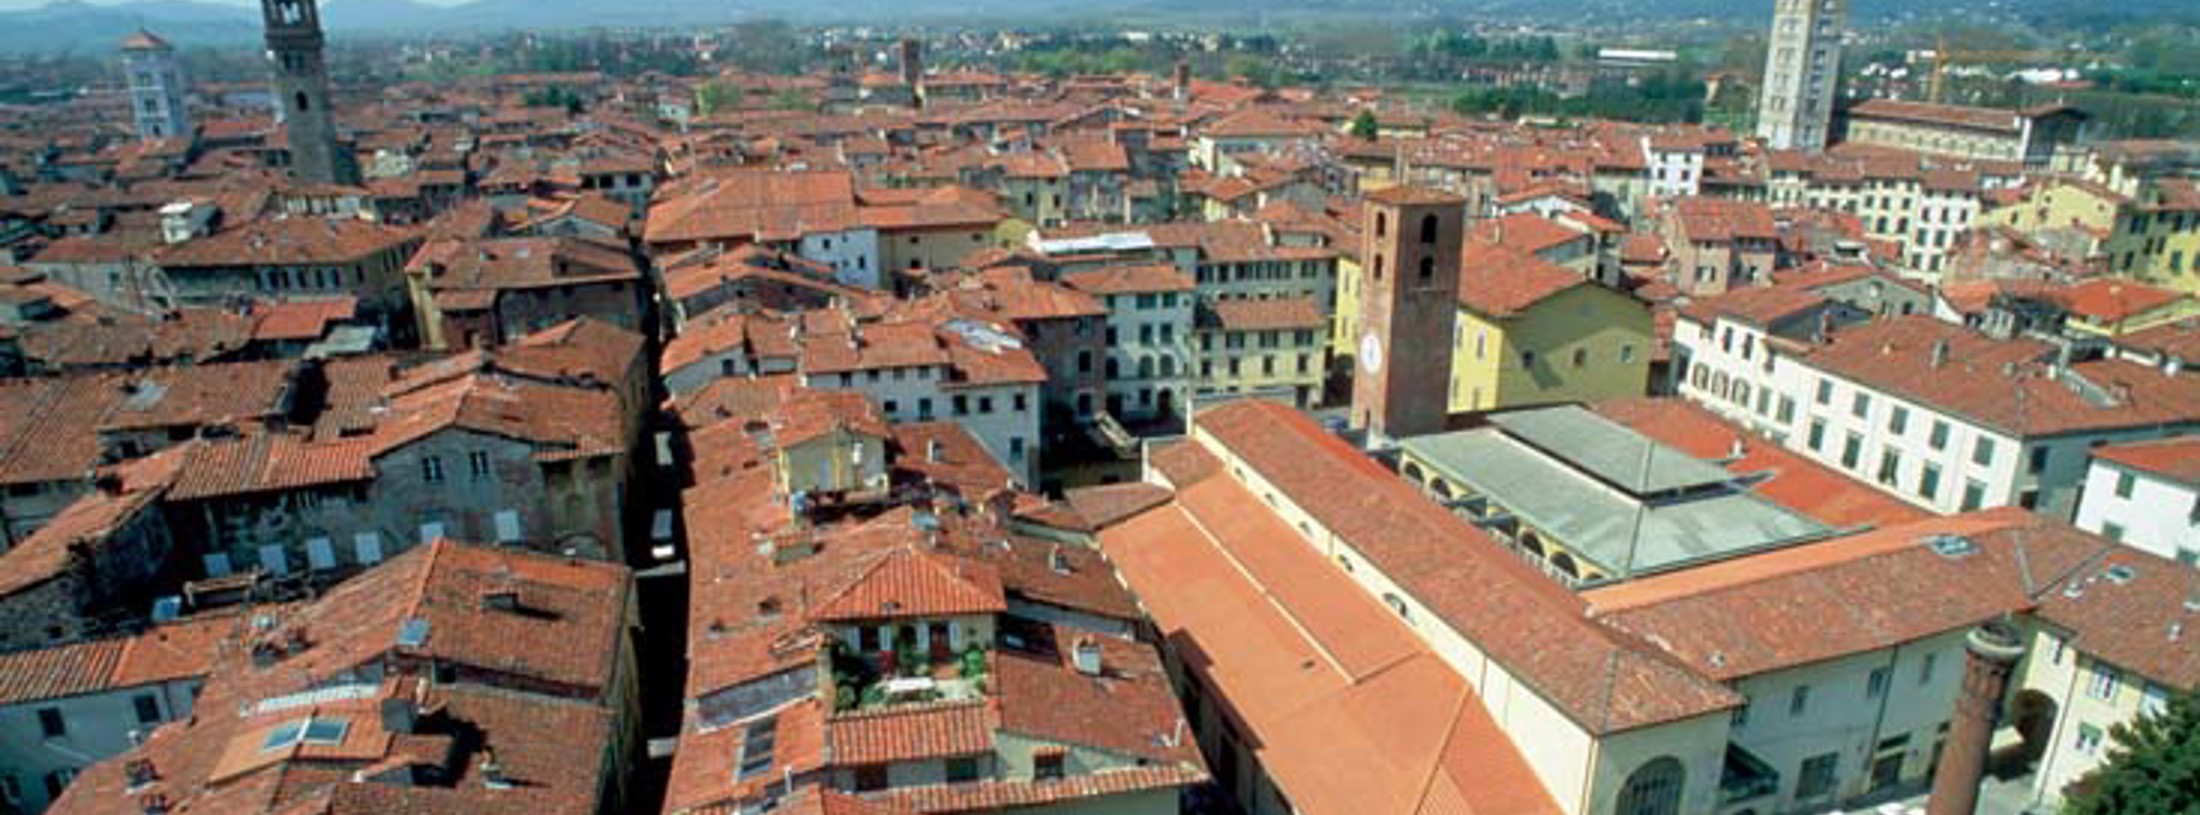 Pisa-Lucca provinsen